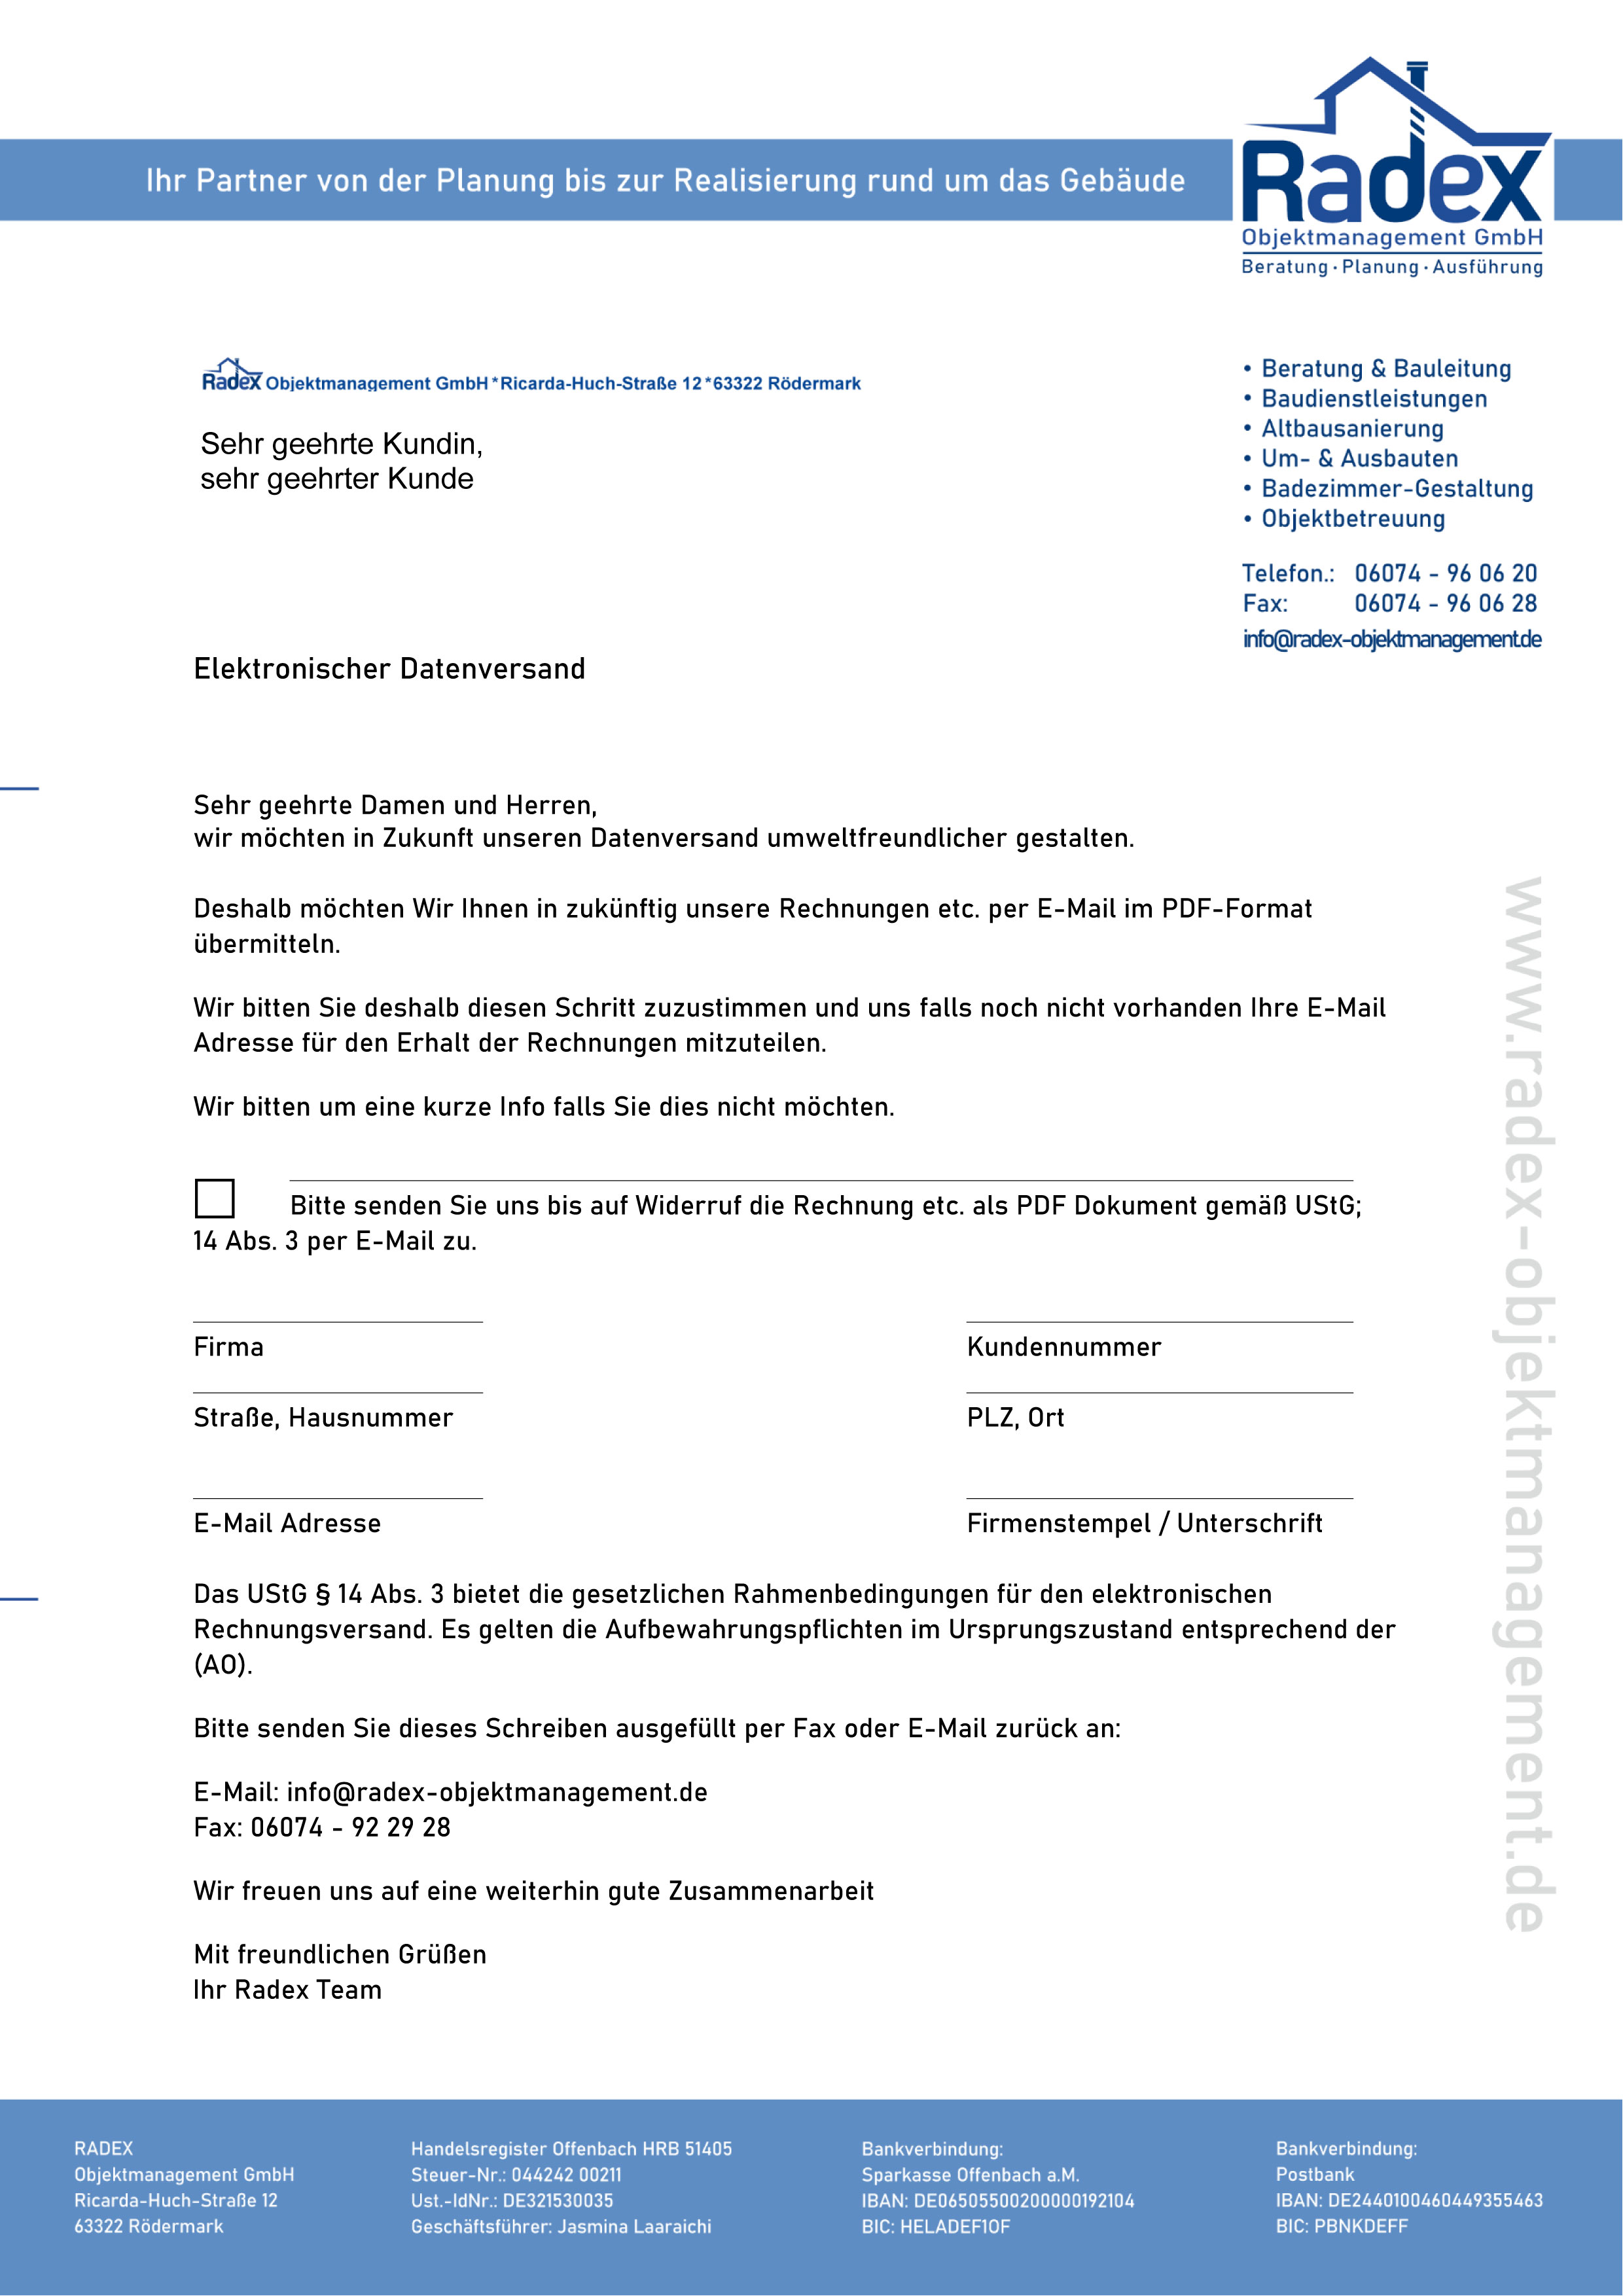 Elektronische Datenschutzverordnung, radex Objektmanagement GmbH, Download 